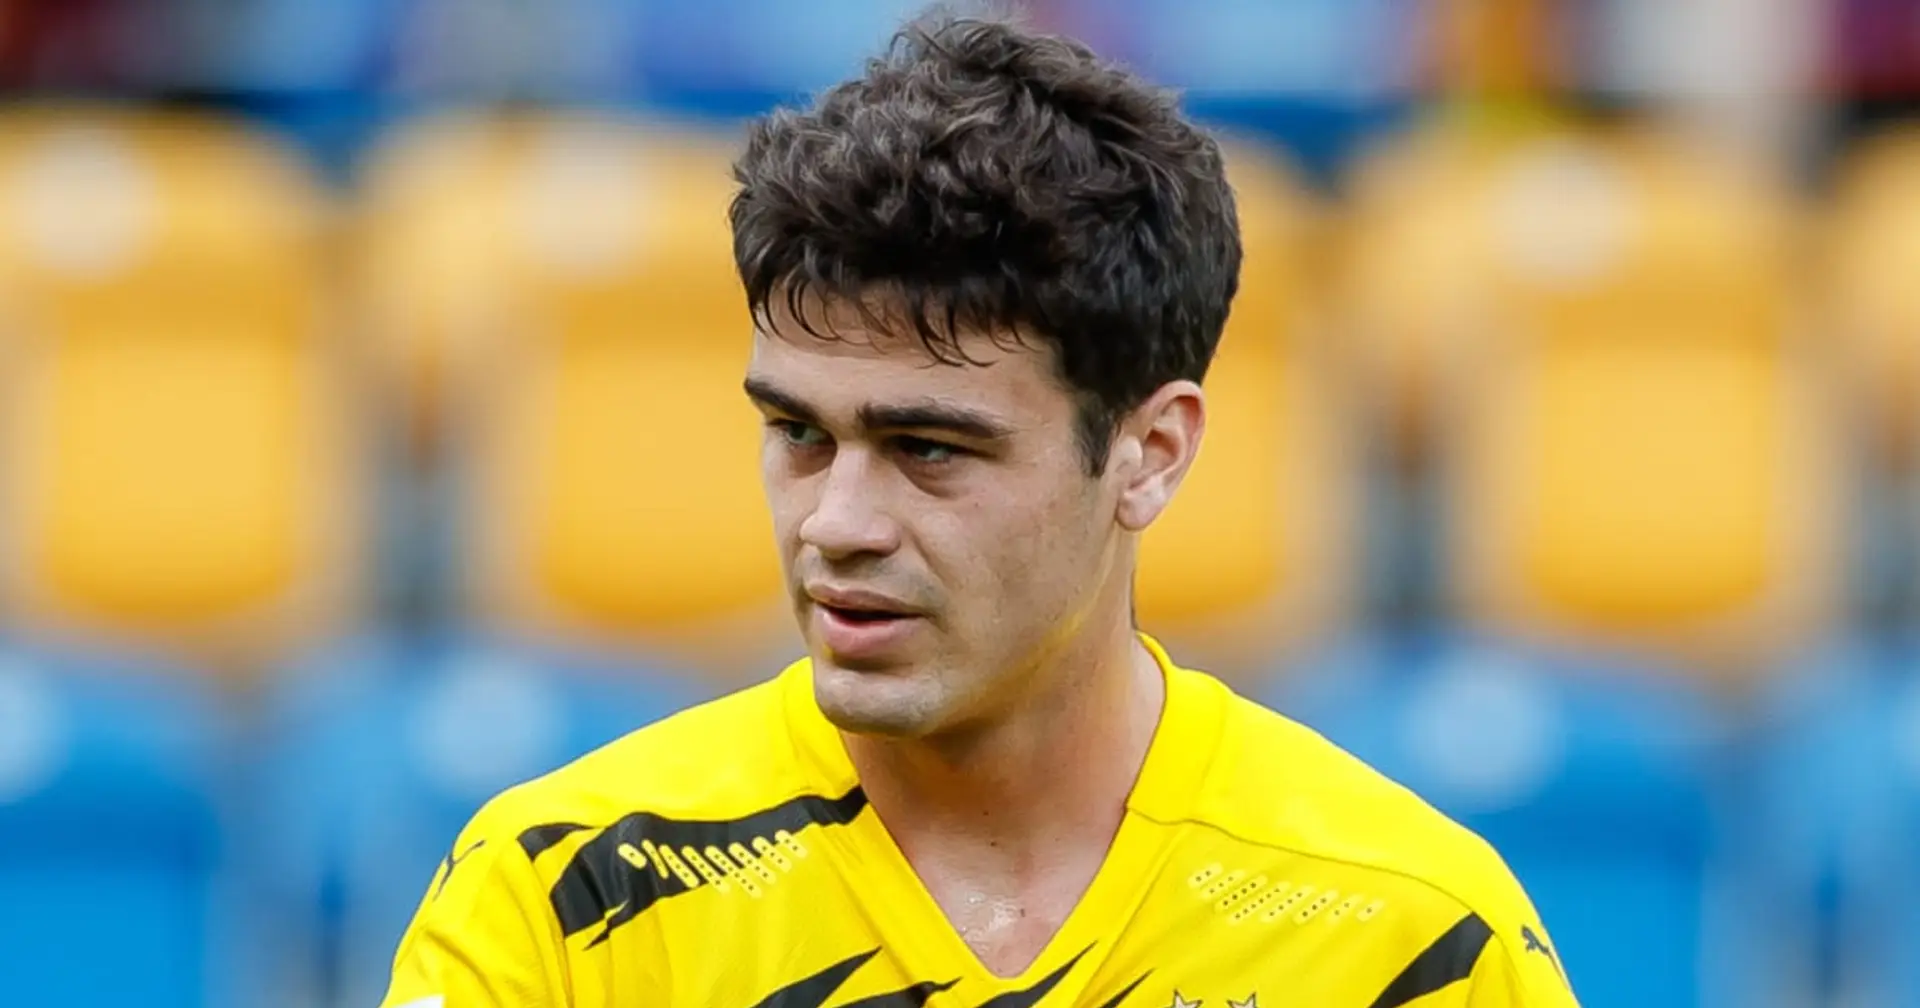 Tolle Nachricht für Rose: Giovanni Reyna ist bereits in Dortmund und nimmt das Training auf!